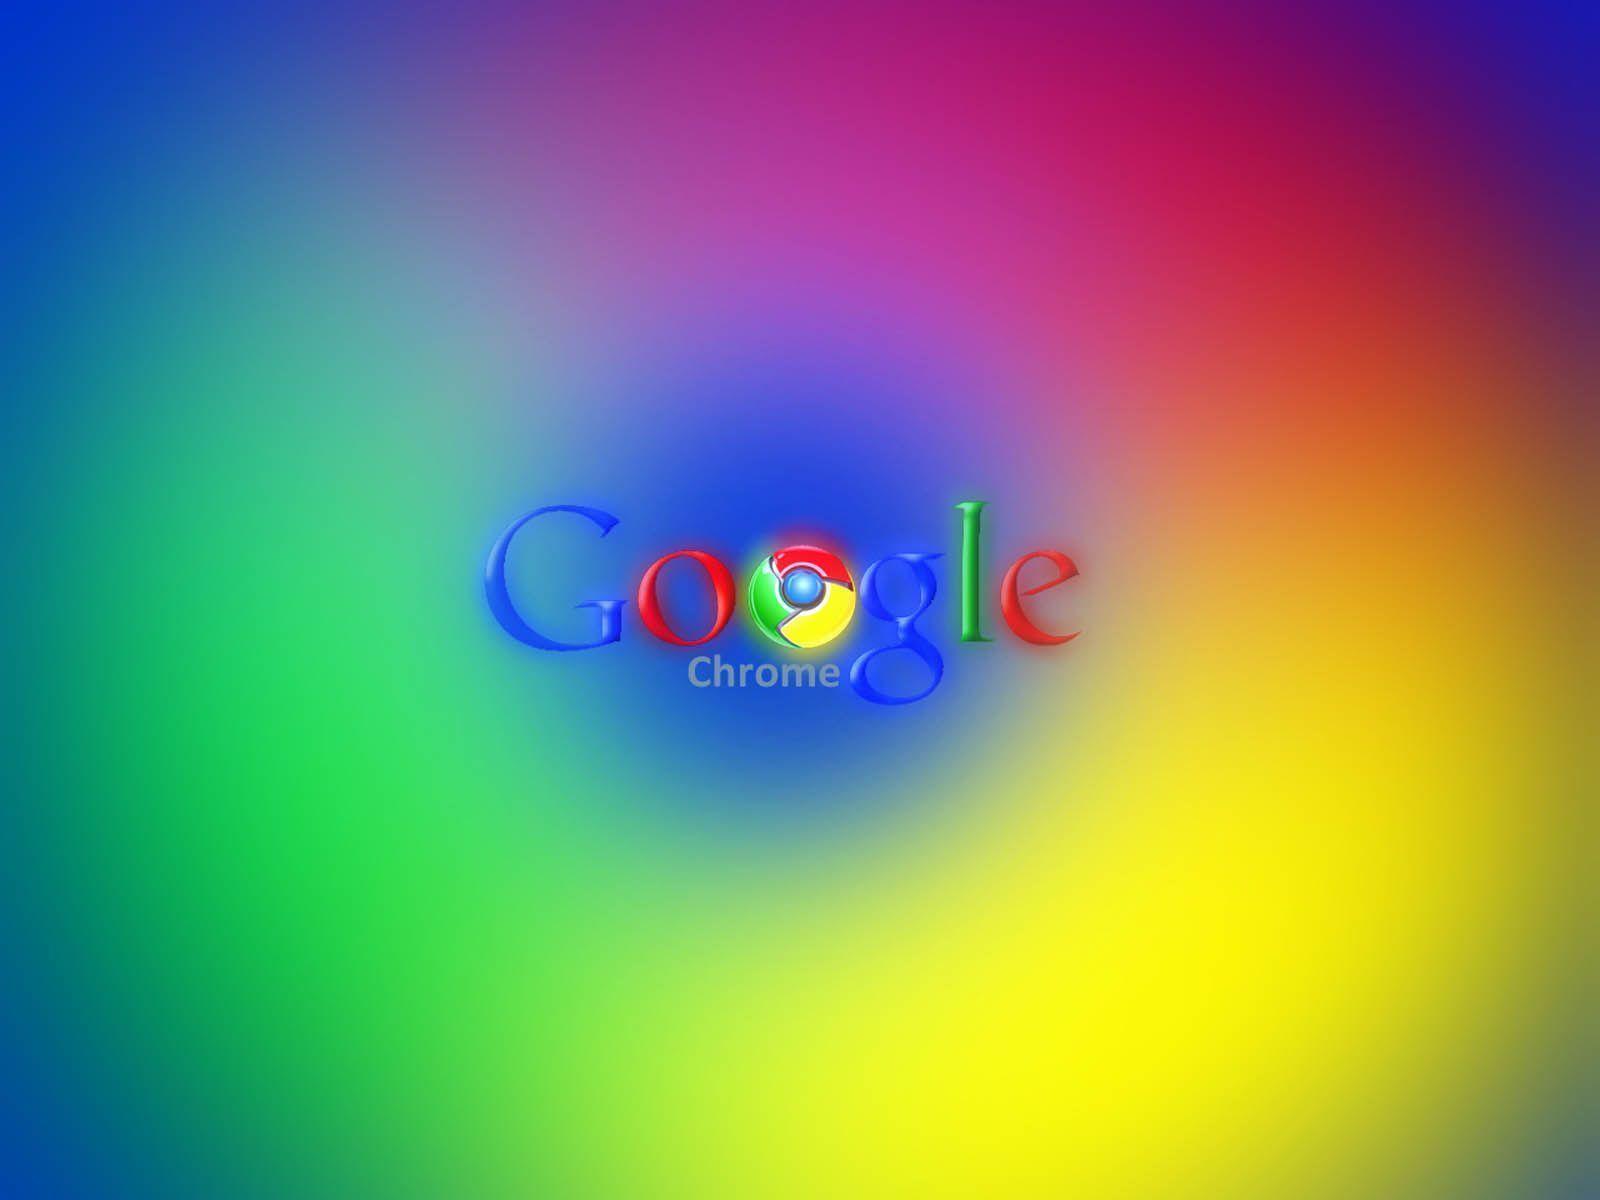 Google Chrome Wallpaper